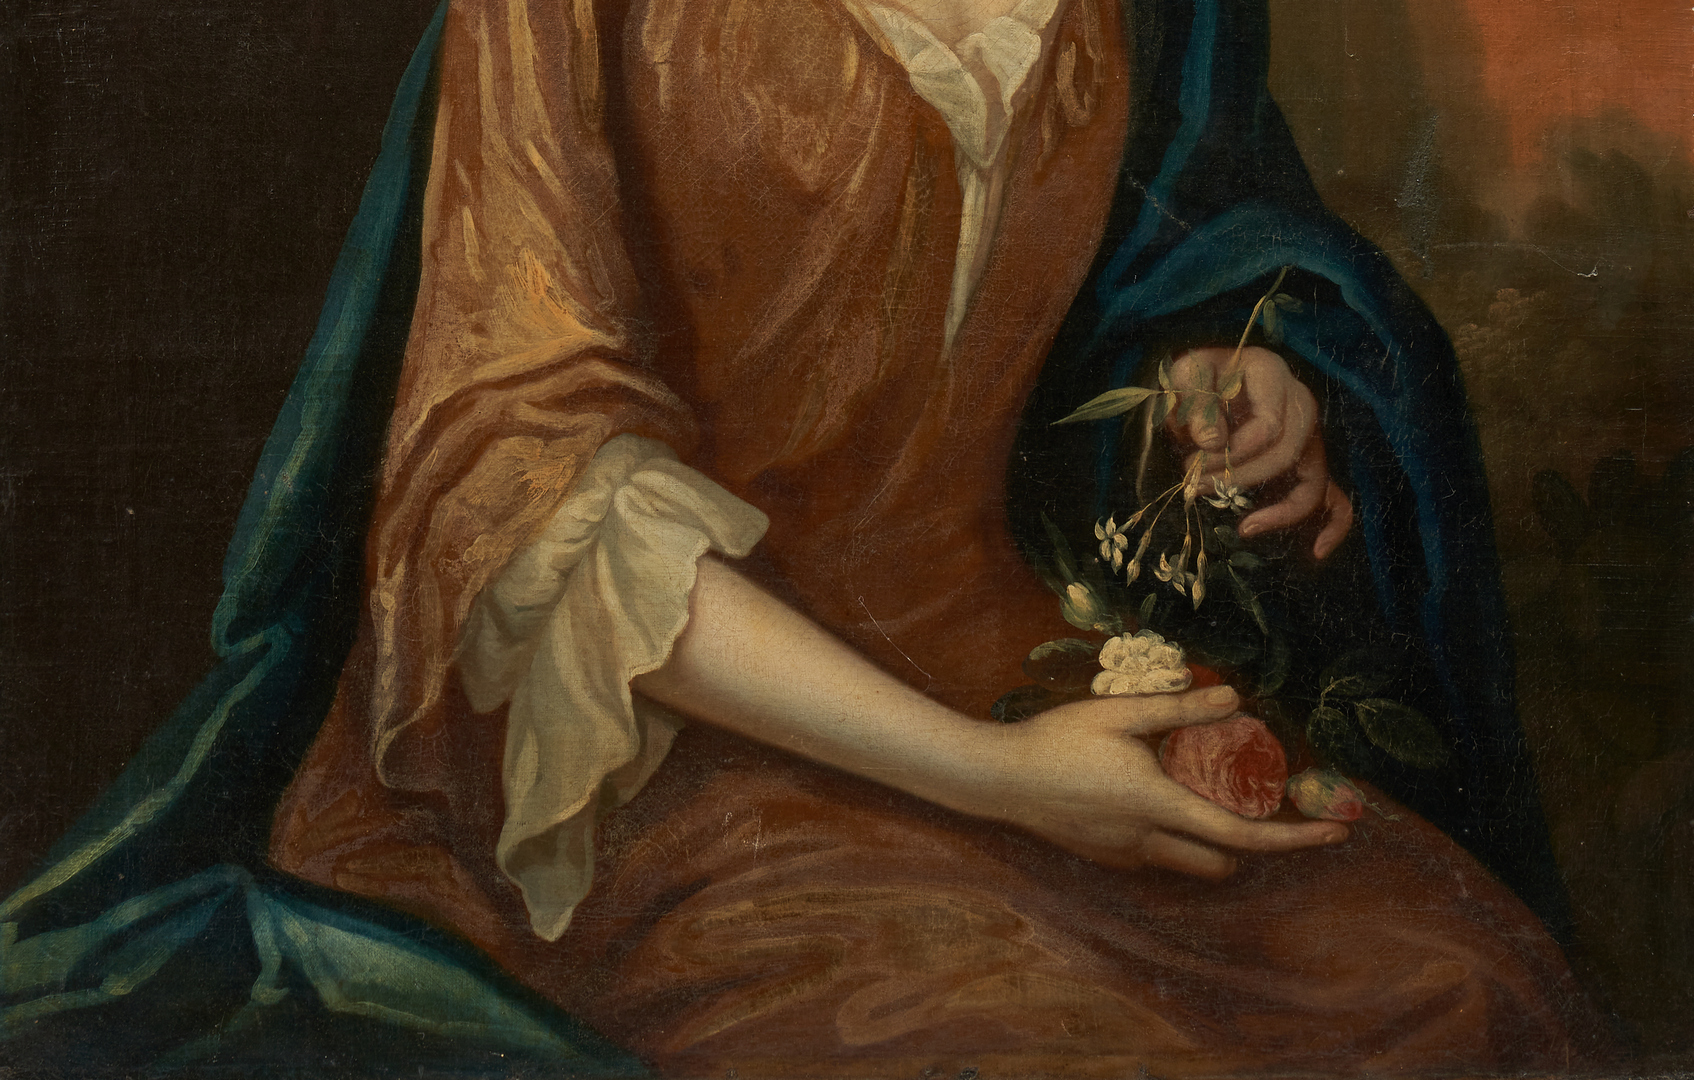 Lot 158: 18th C. American Portrait of a Lady, attrib. R. Feke